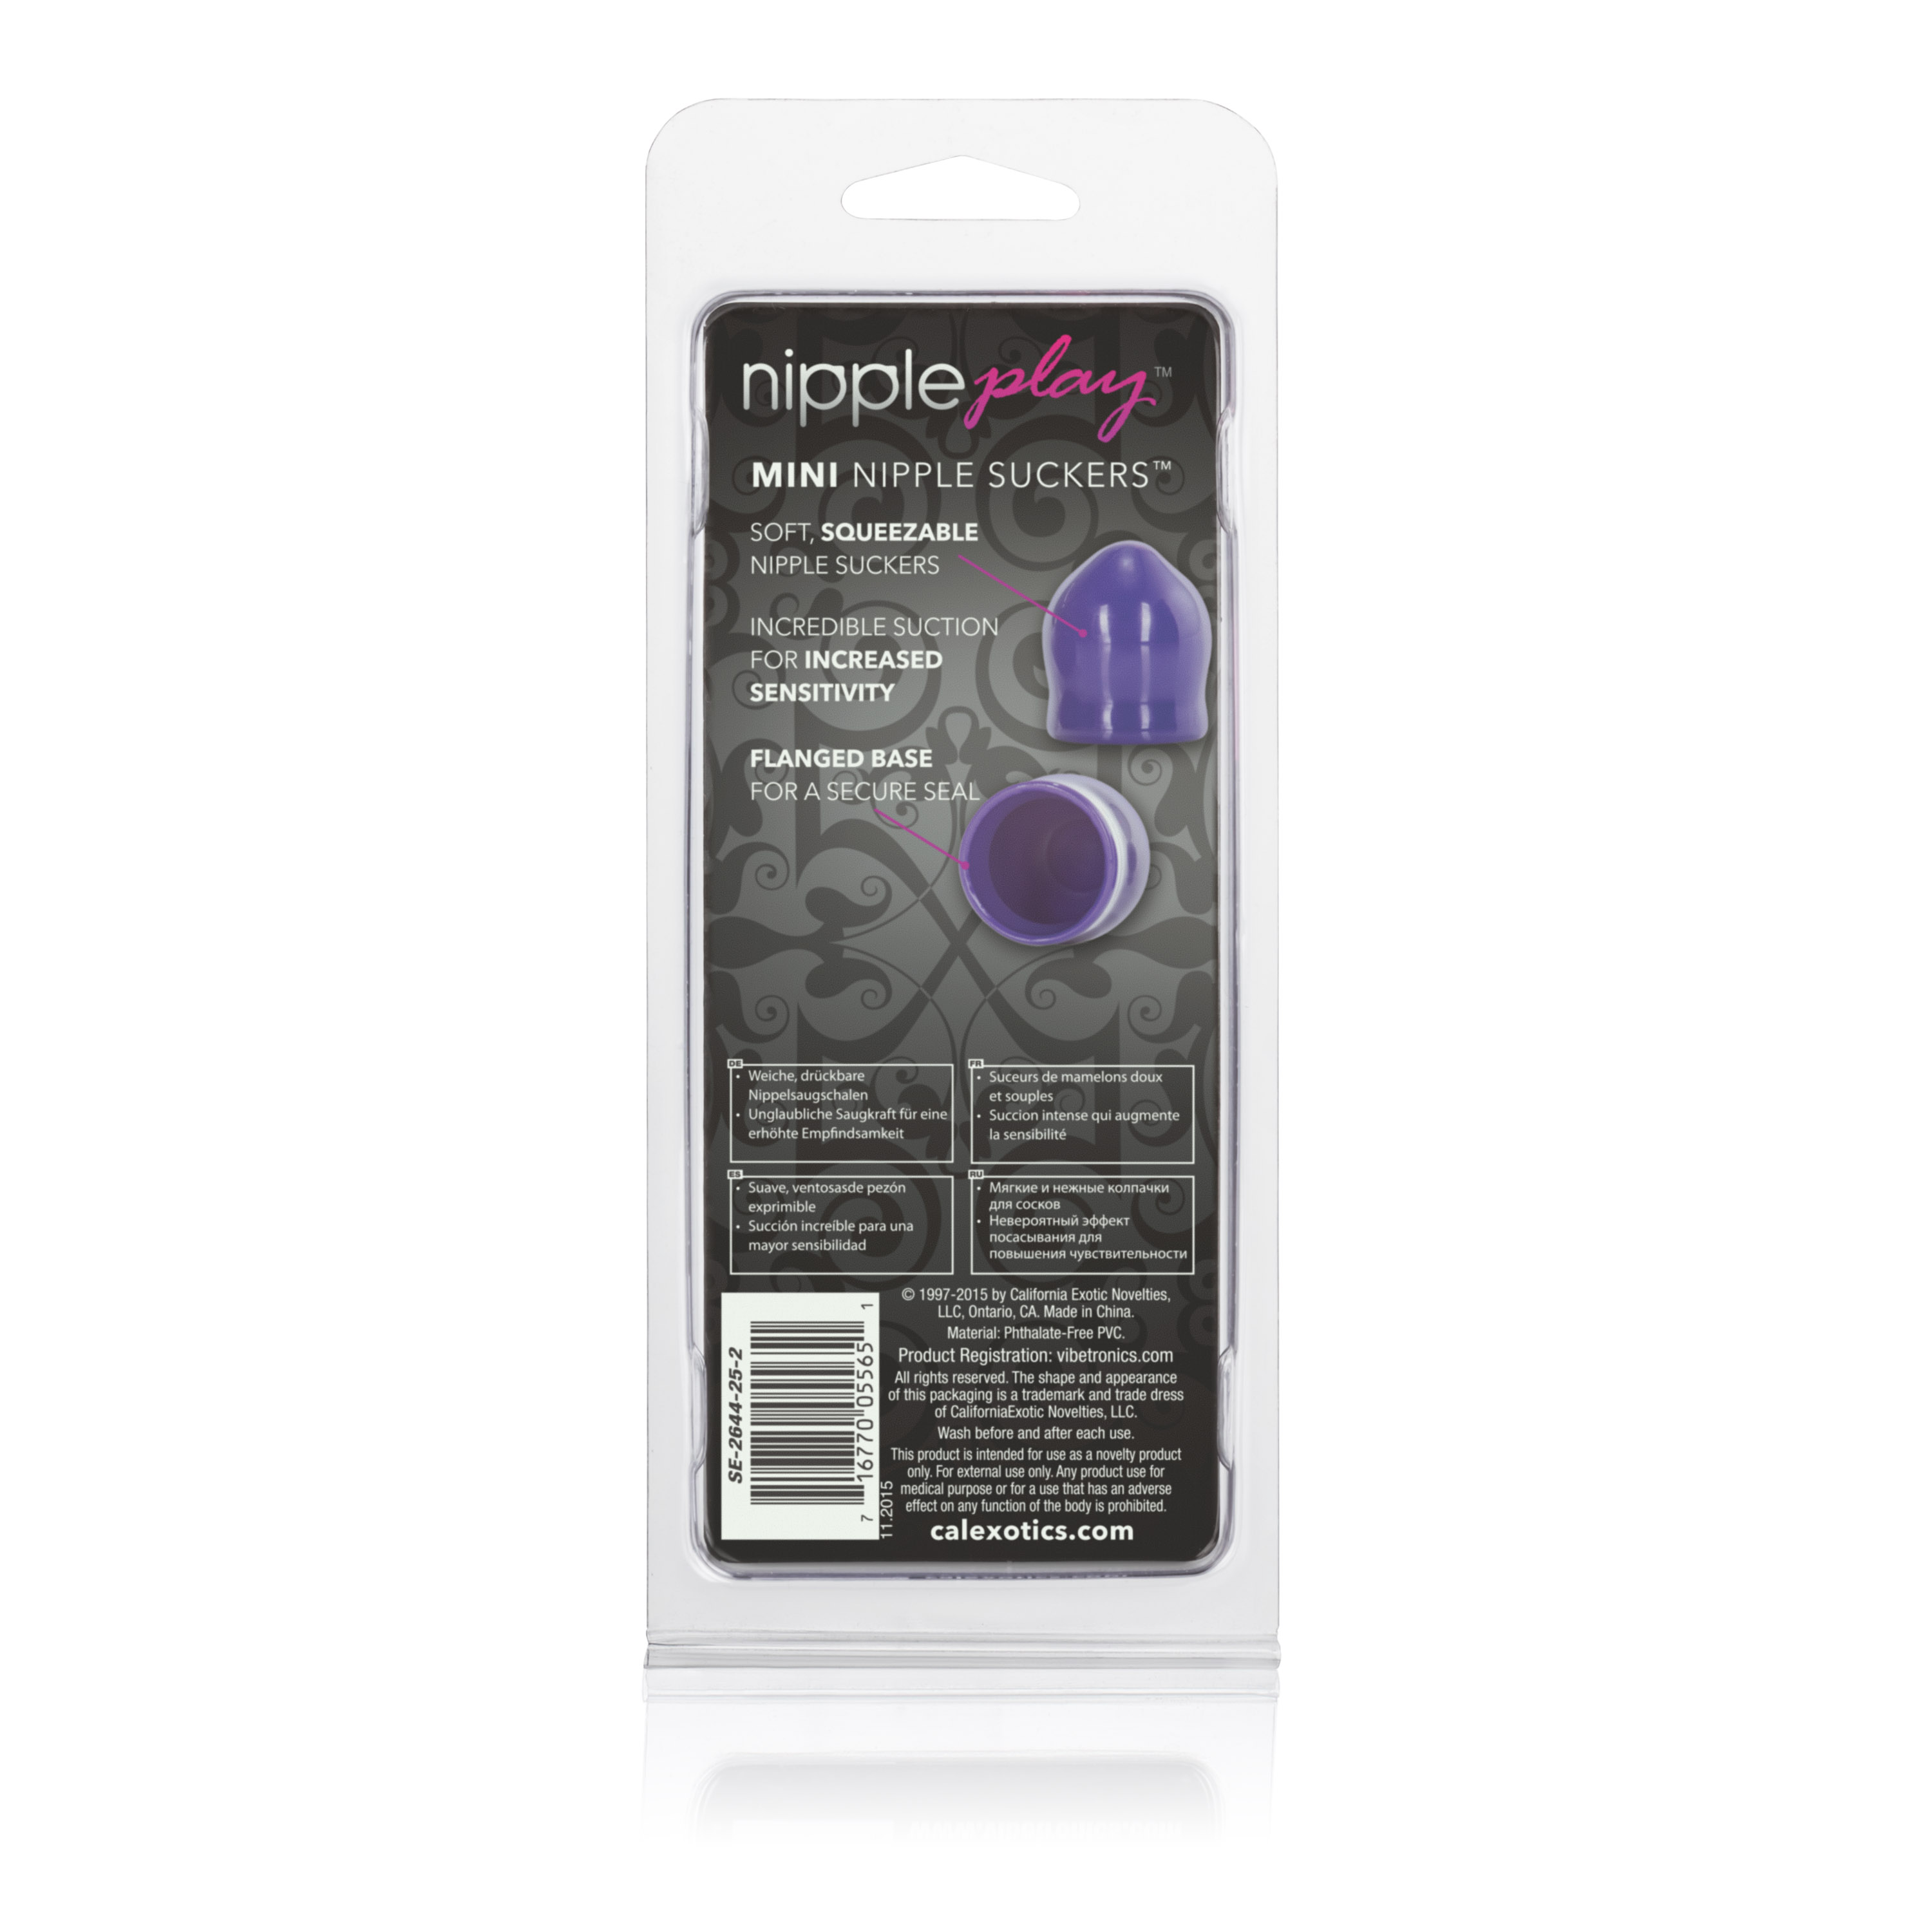 nipple play mini nipple suckers purple 